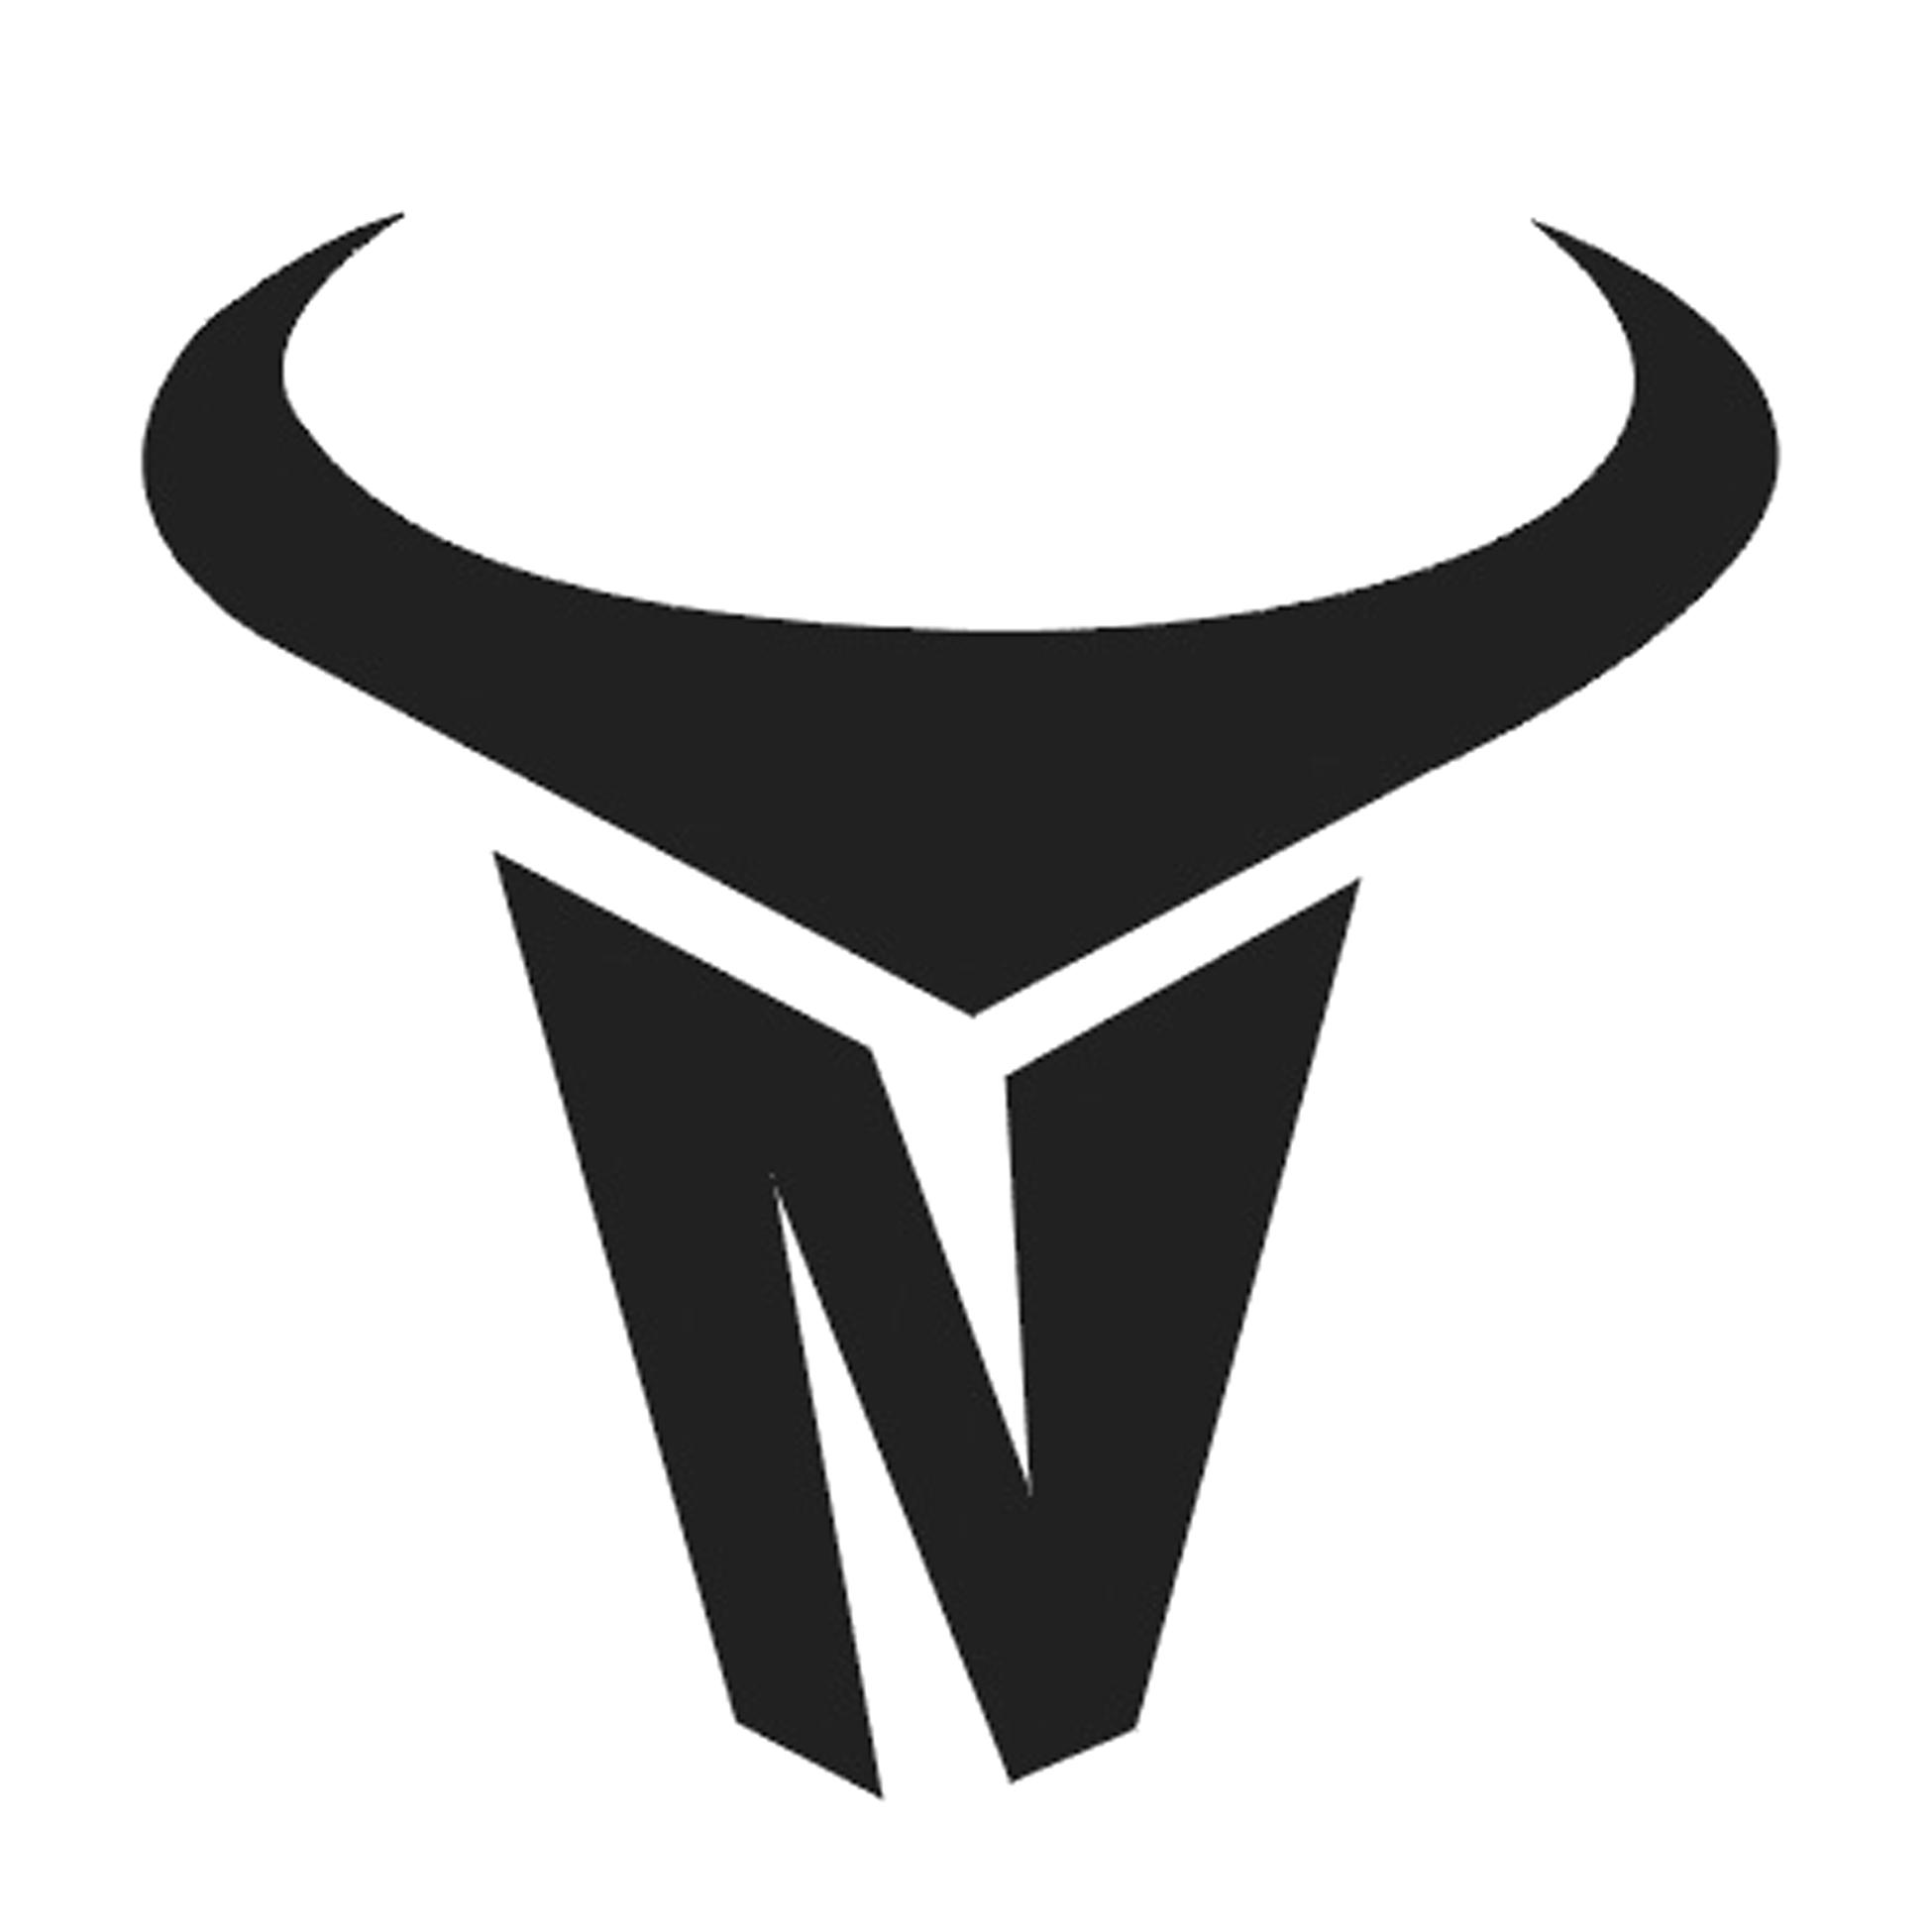 牛logo霸气 简单图片